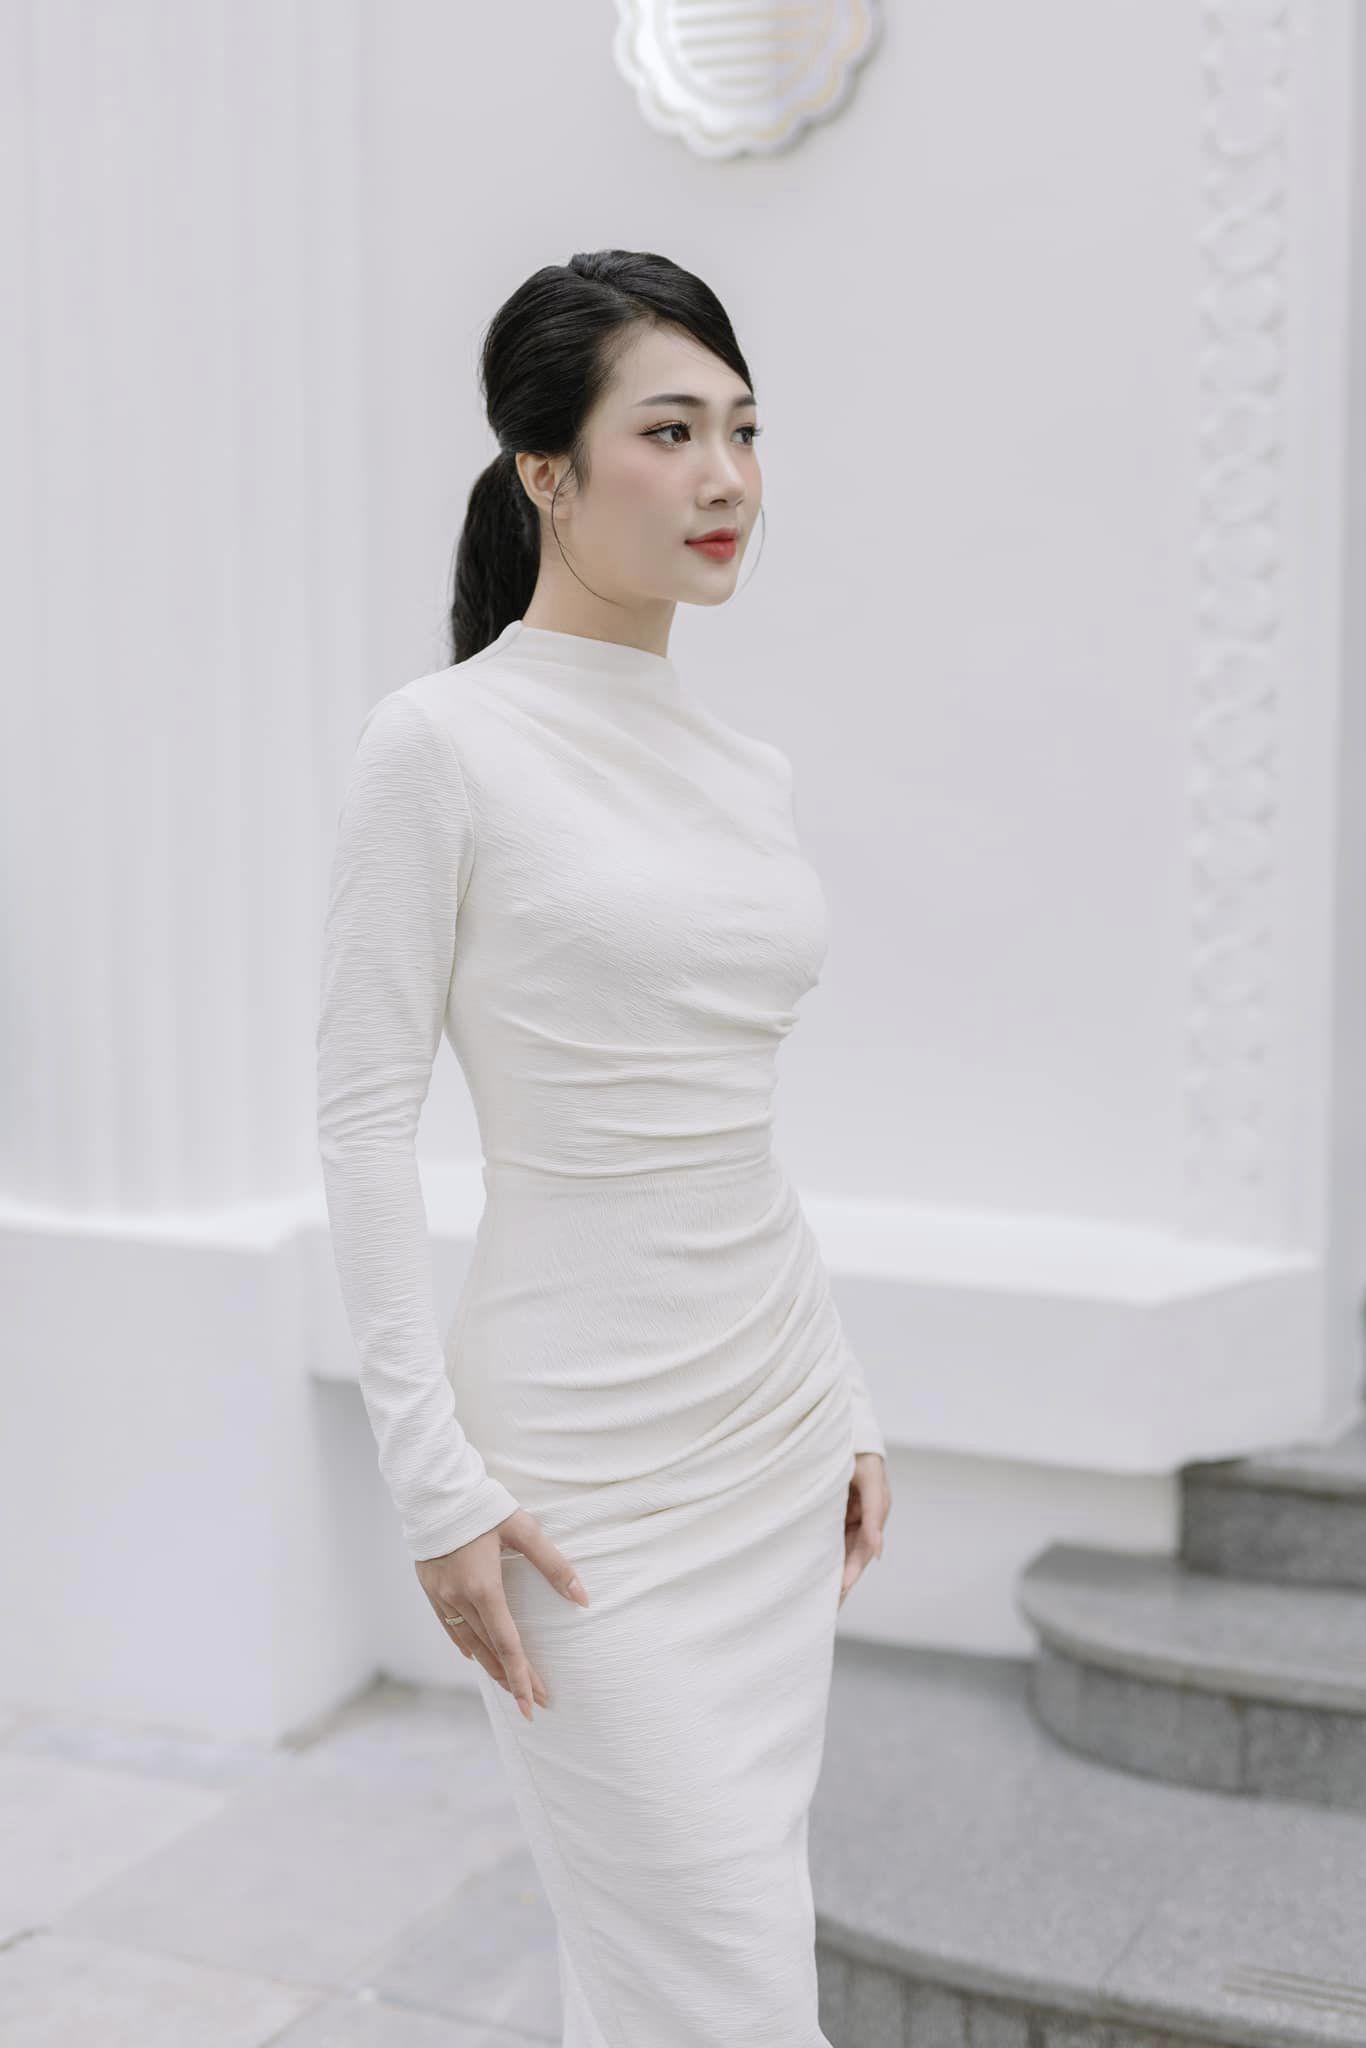 "Con gái đại gia nghìn tỷ phim Việt" dáng đẹp như người mẫu, chuộng mặc tôn hình thể - 8